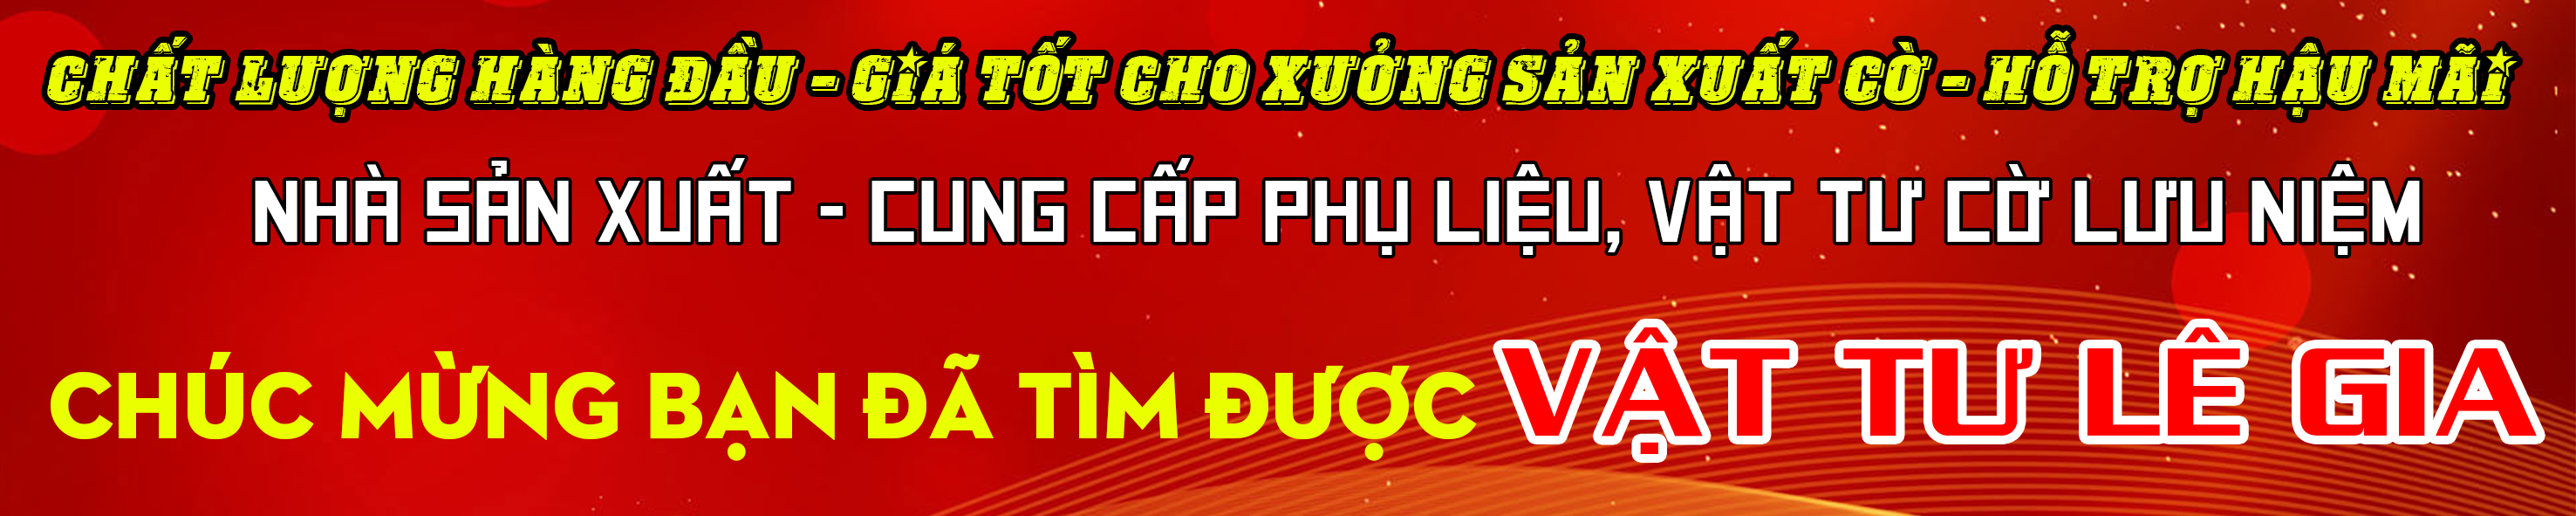 Vật tư Lê Gia, nhà cung cấp nguyên phụ liệu may cờ lưu niệm hàng đầu Việt Nam